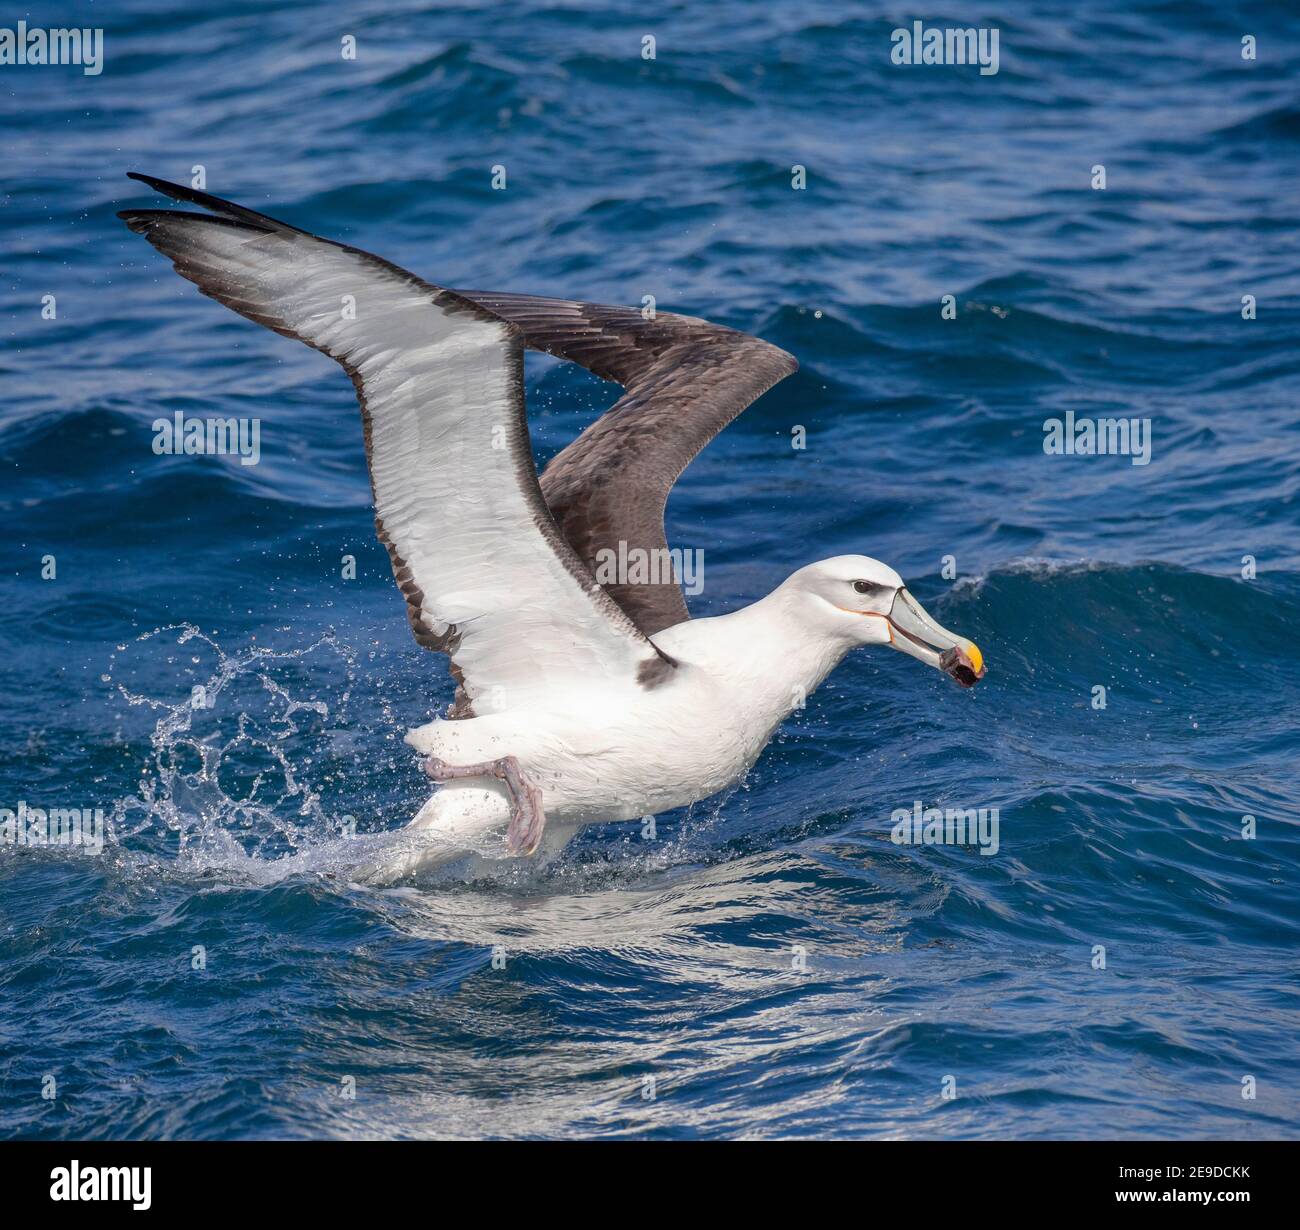 Albatross con tetto bianco (Thalassarche Steadi, Thalassarche cauta Steadi), decollo dalla superficie dell'oceano, trasporto di cibo nel suo conto, Nuova Zelanda, Foto Stock